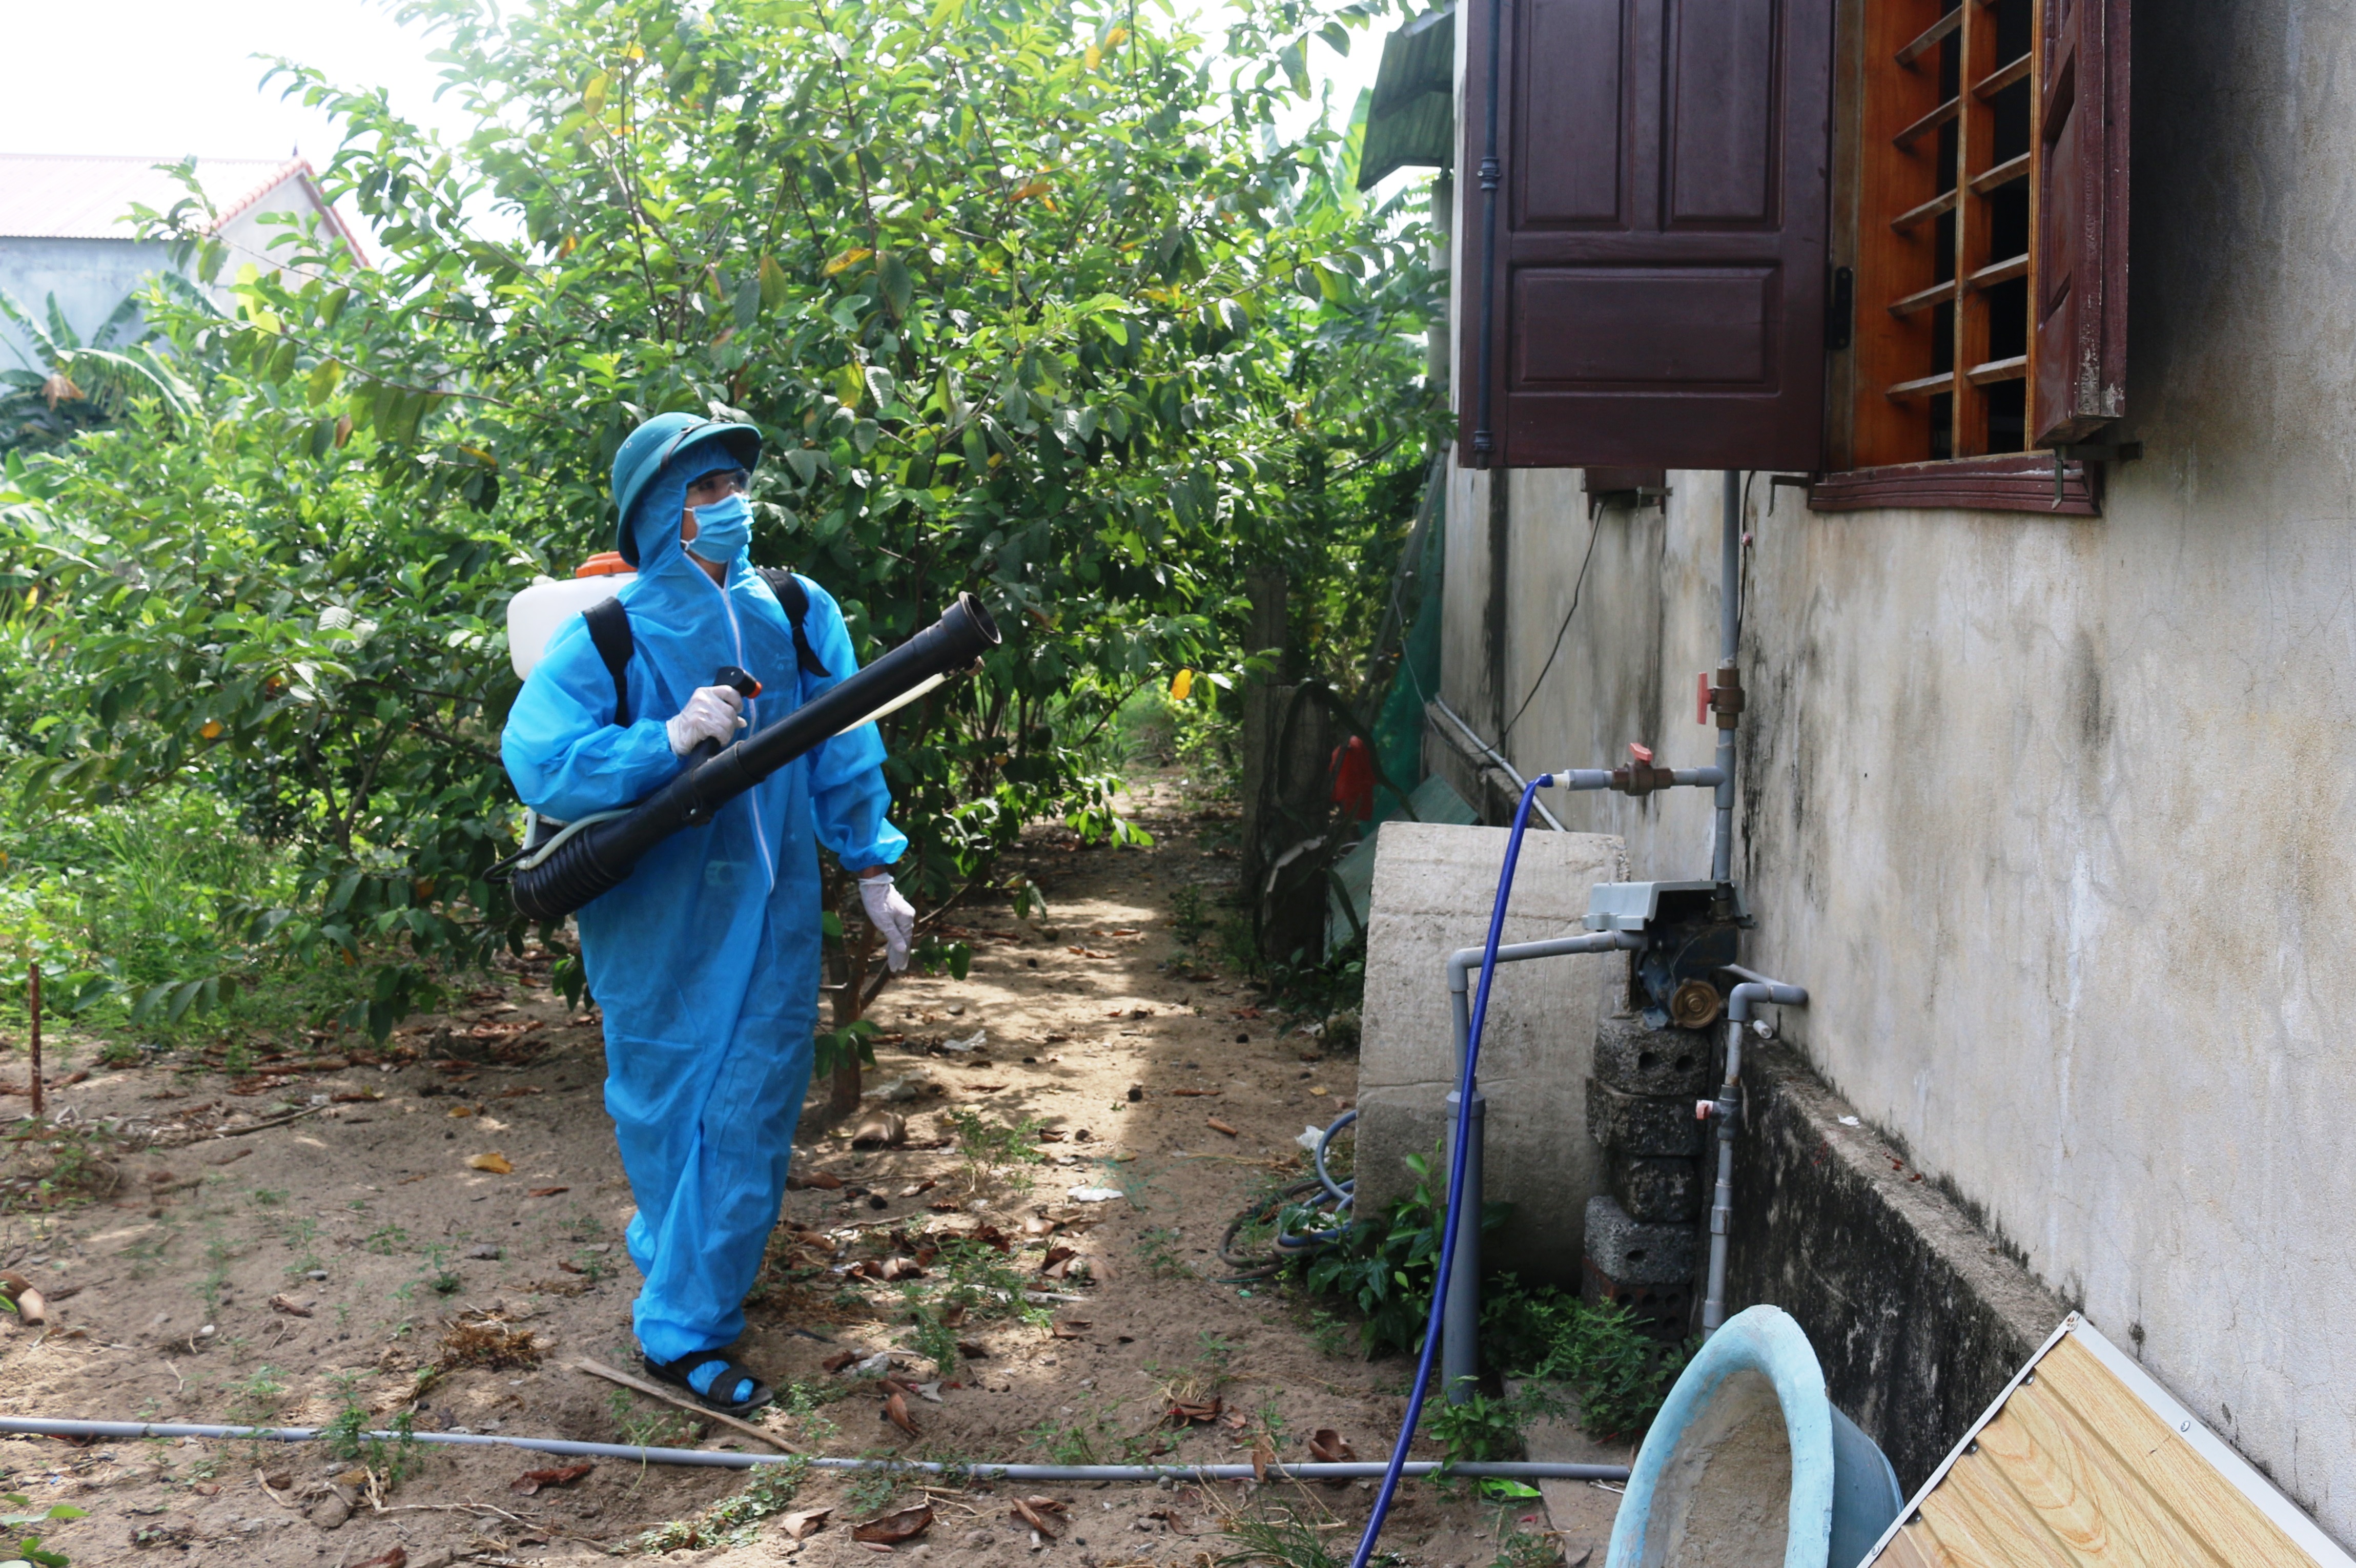   Cán bộ y tế đang phun hóa chất diệt muỗi tại nhà dân ở thôn Tròn, xã Vạn Trạch, huyện Bố Trạch.